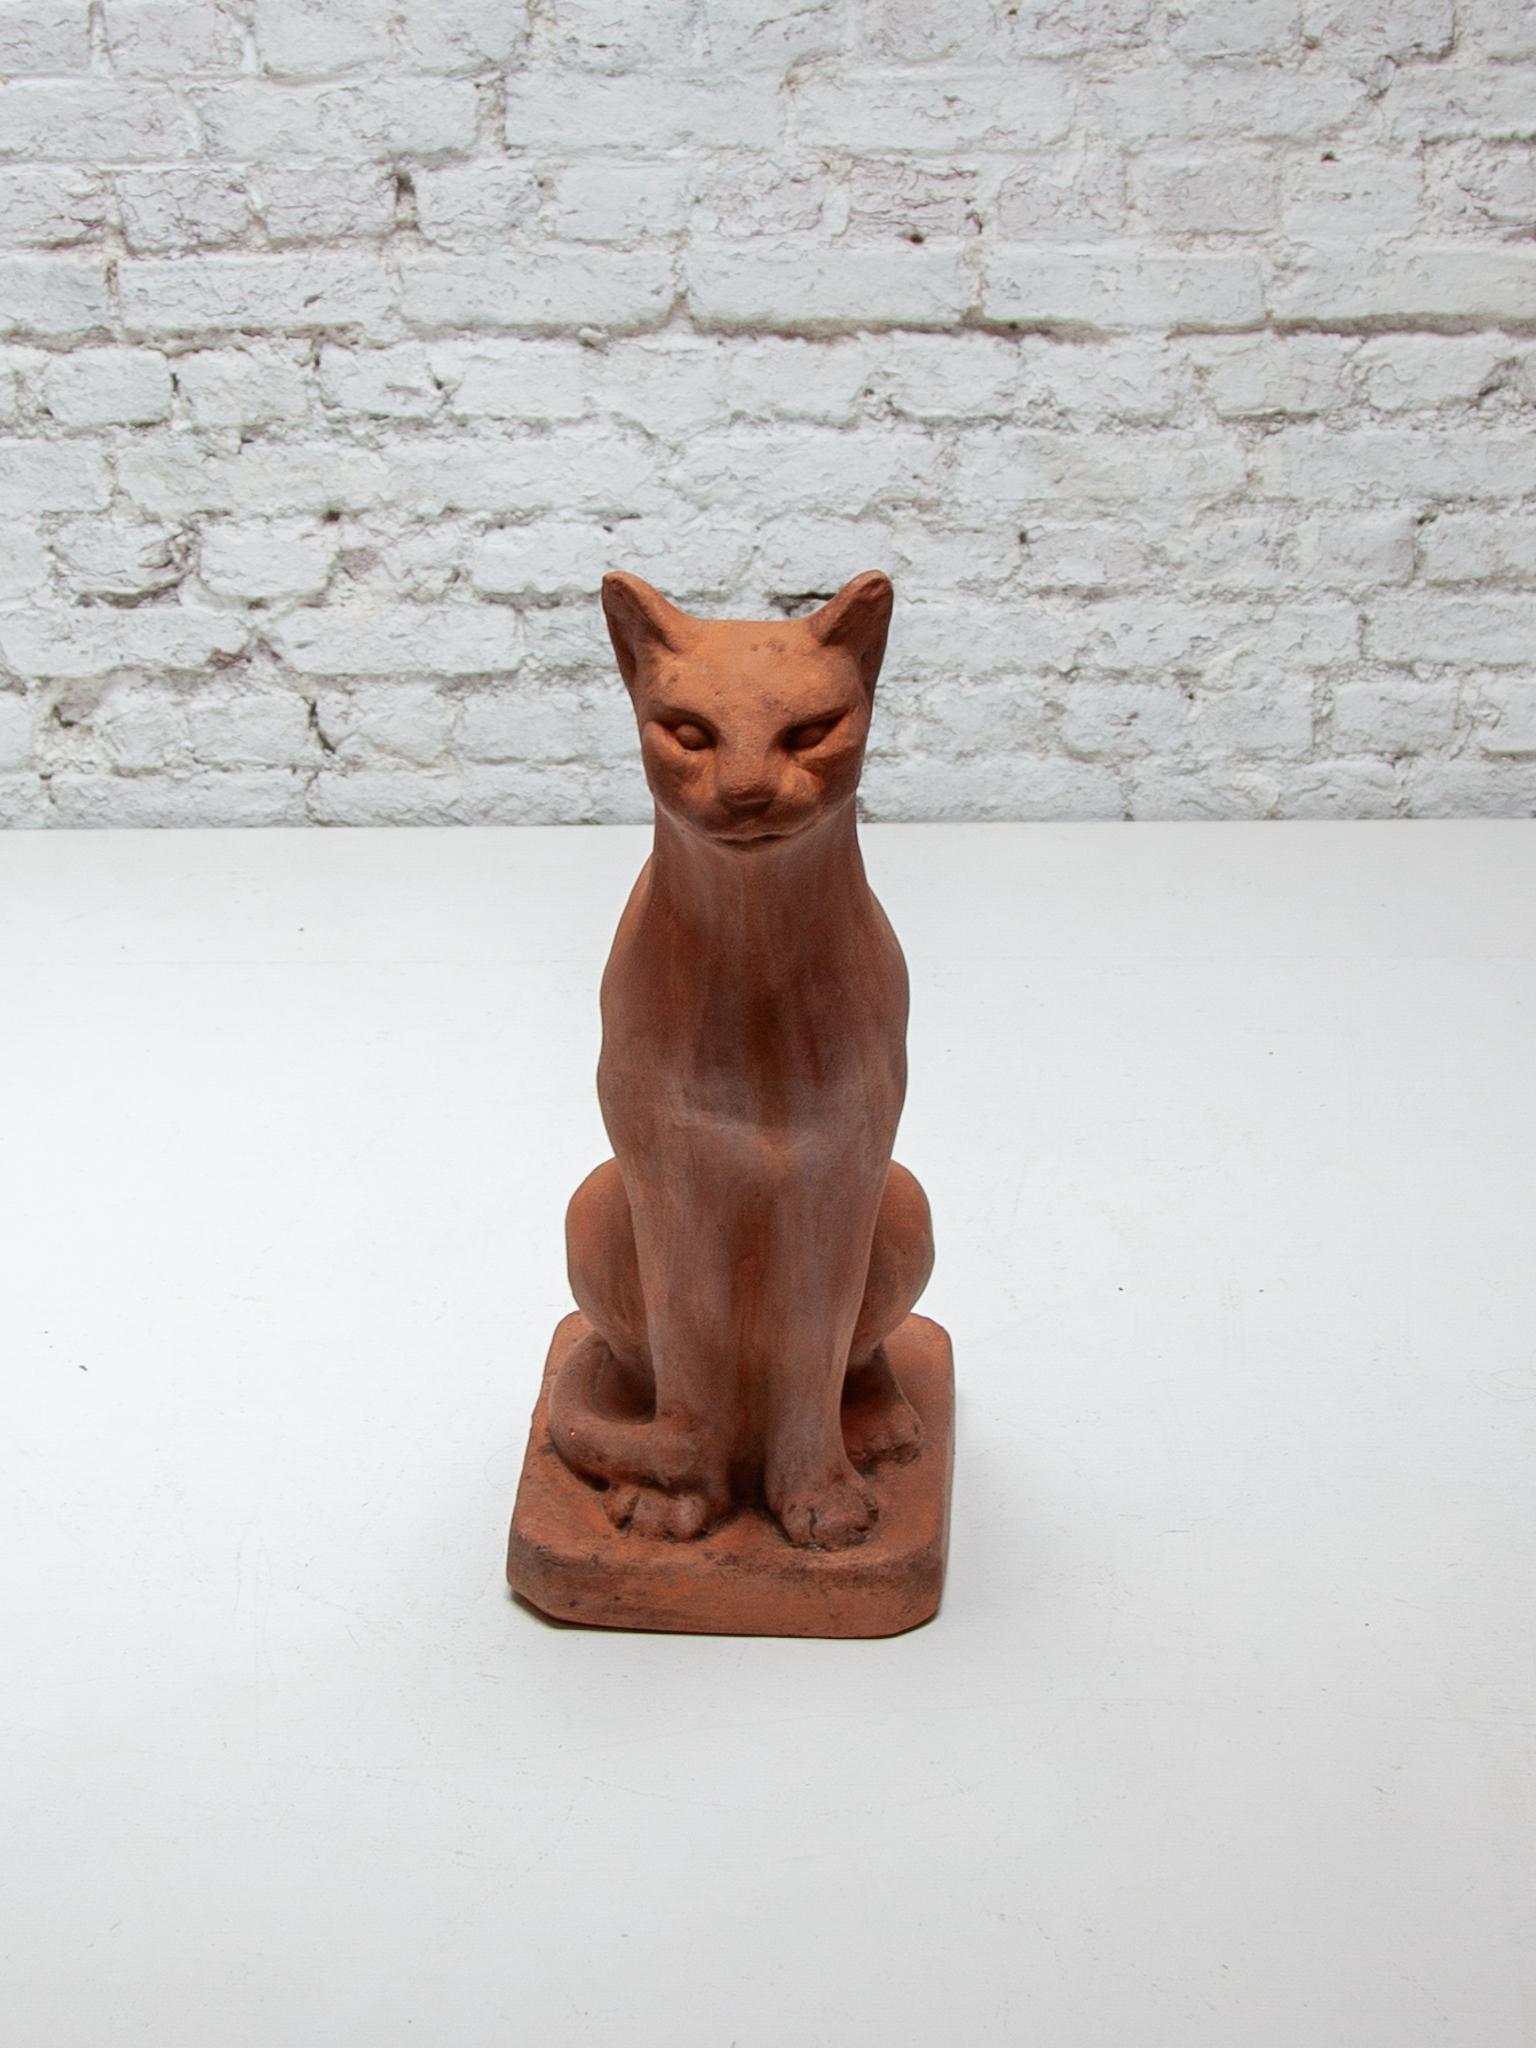 Le chat est moulé en terre cuite avec une expression réaliste, une belle statue pour l'intérieur et l'extérieur.
Hauteur.52 cm. en très bon état d'origine.
